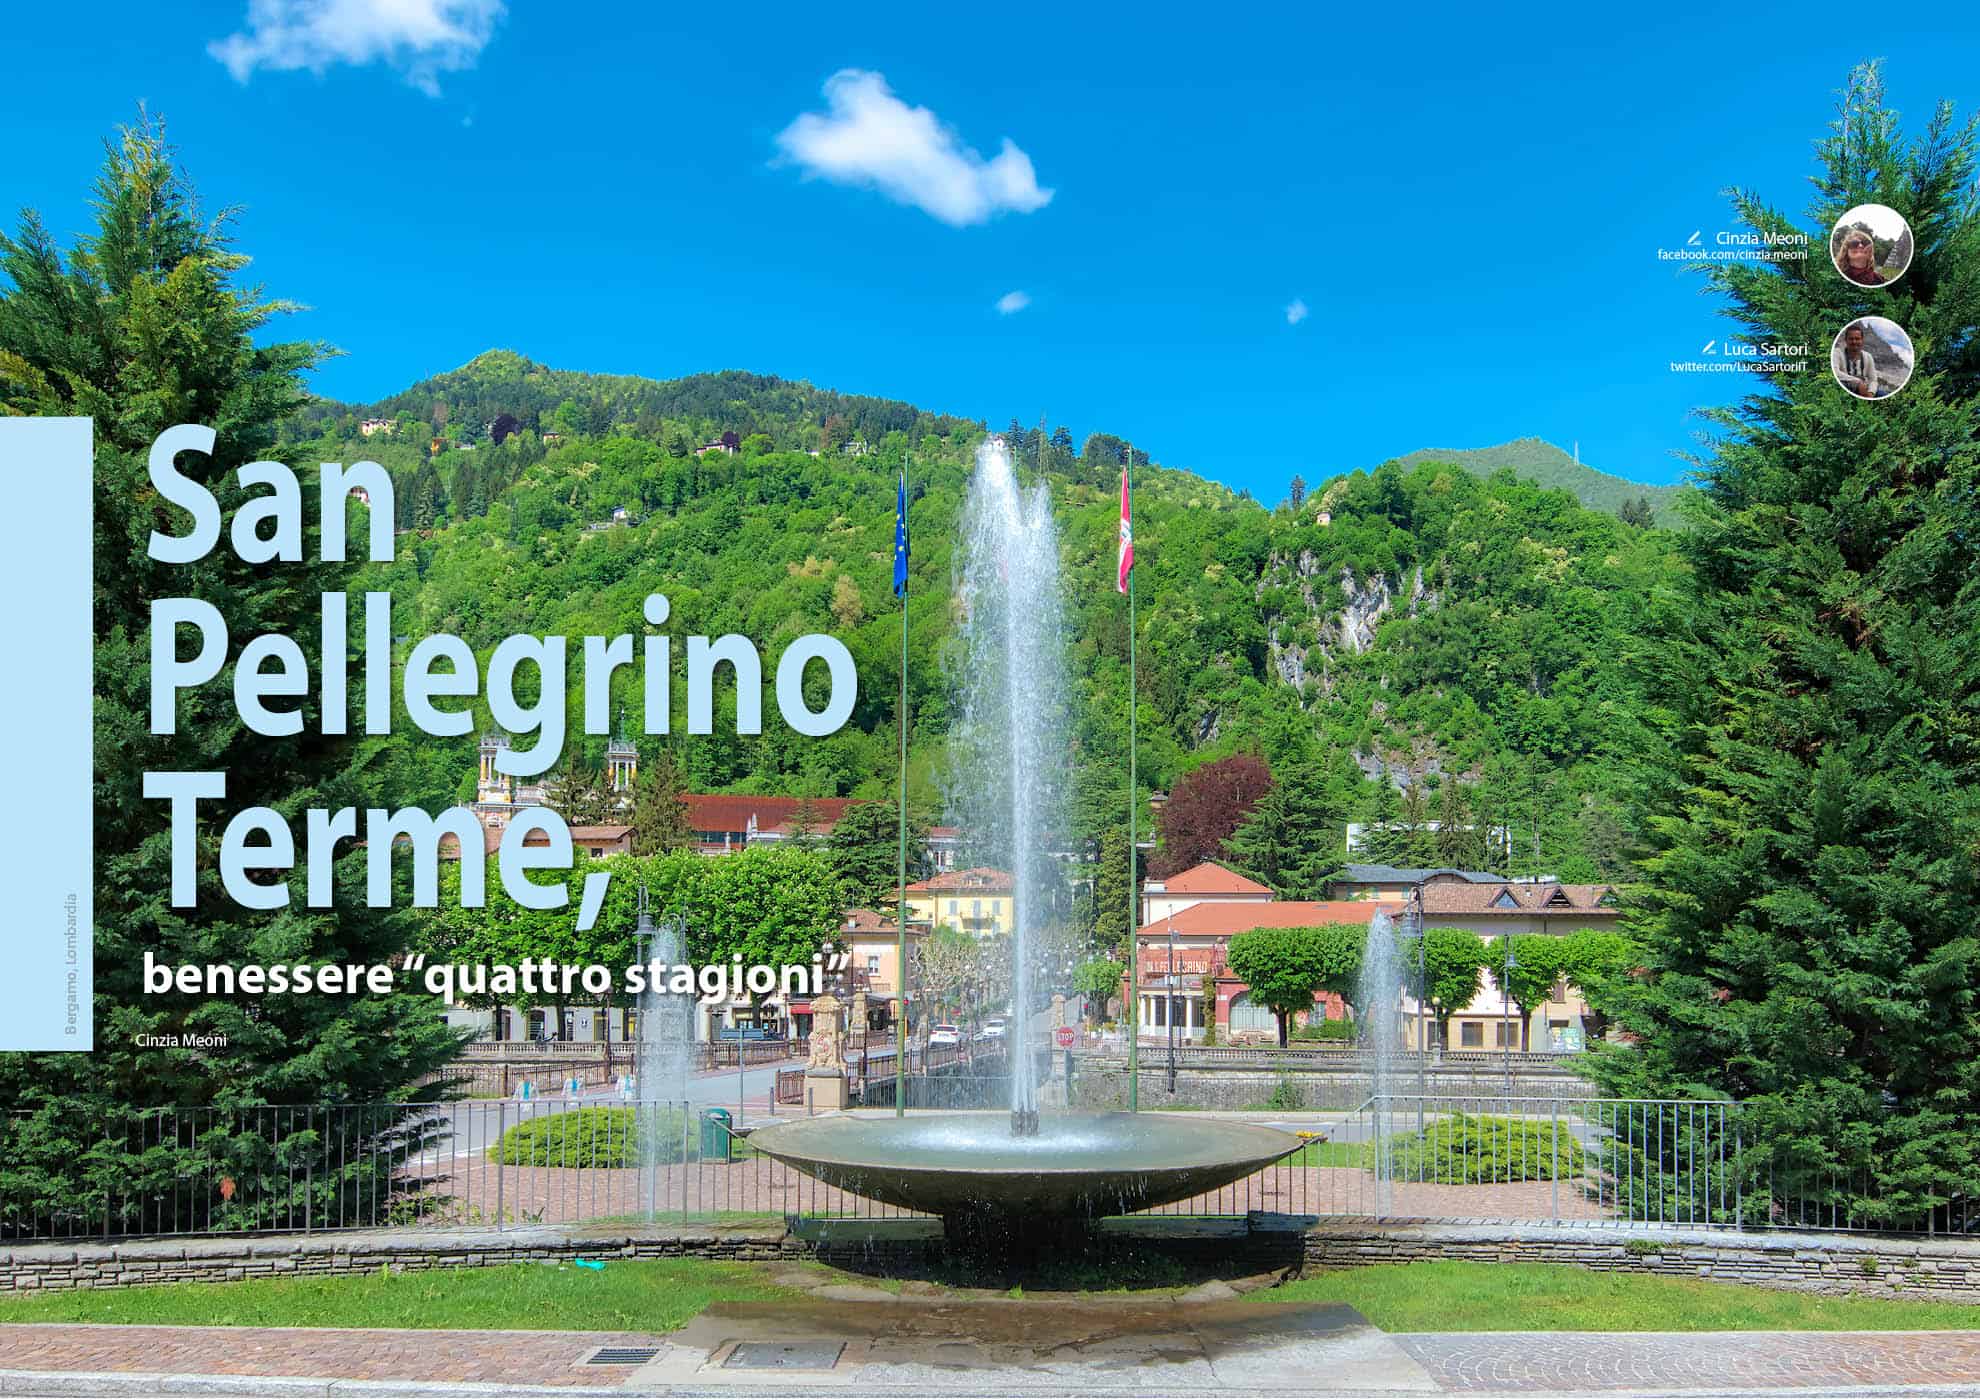 e-borghi travel 2: Benessere e borghi - San Pellegrino, benessere “quattro stagioni”